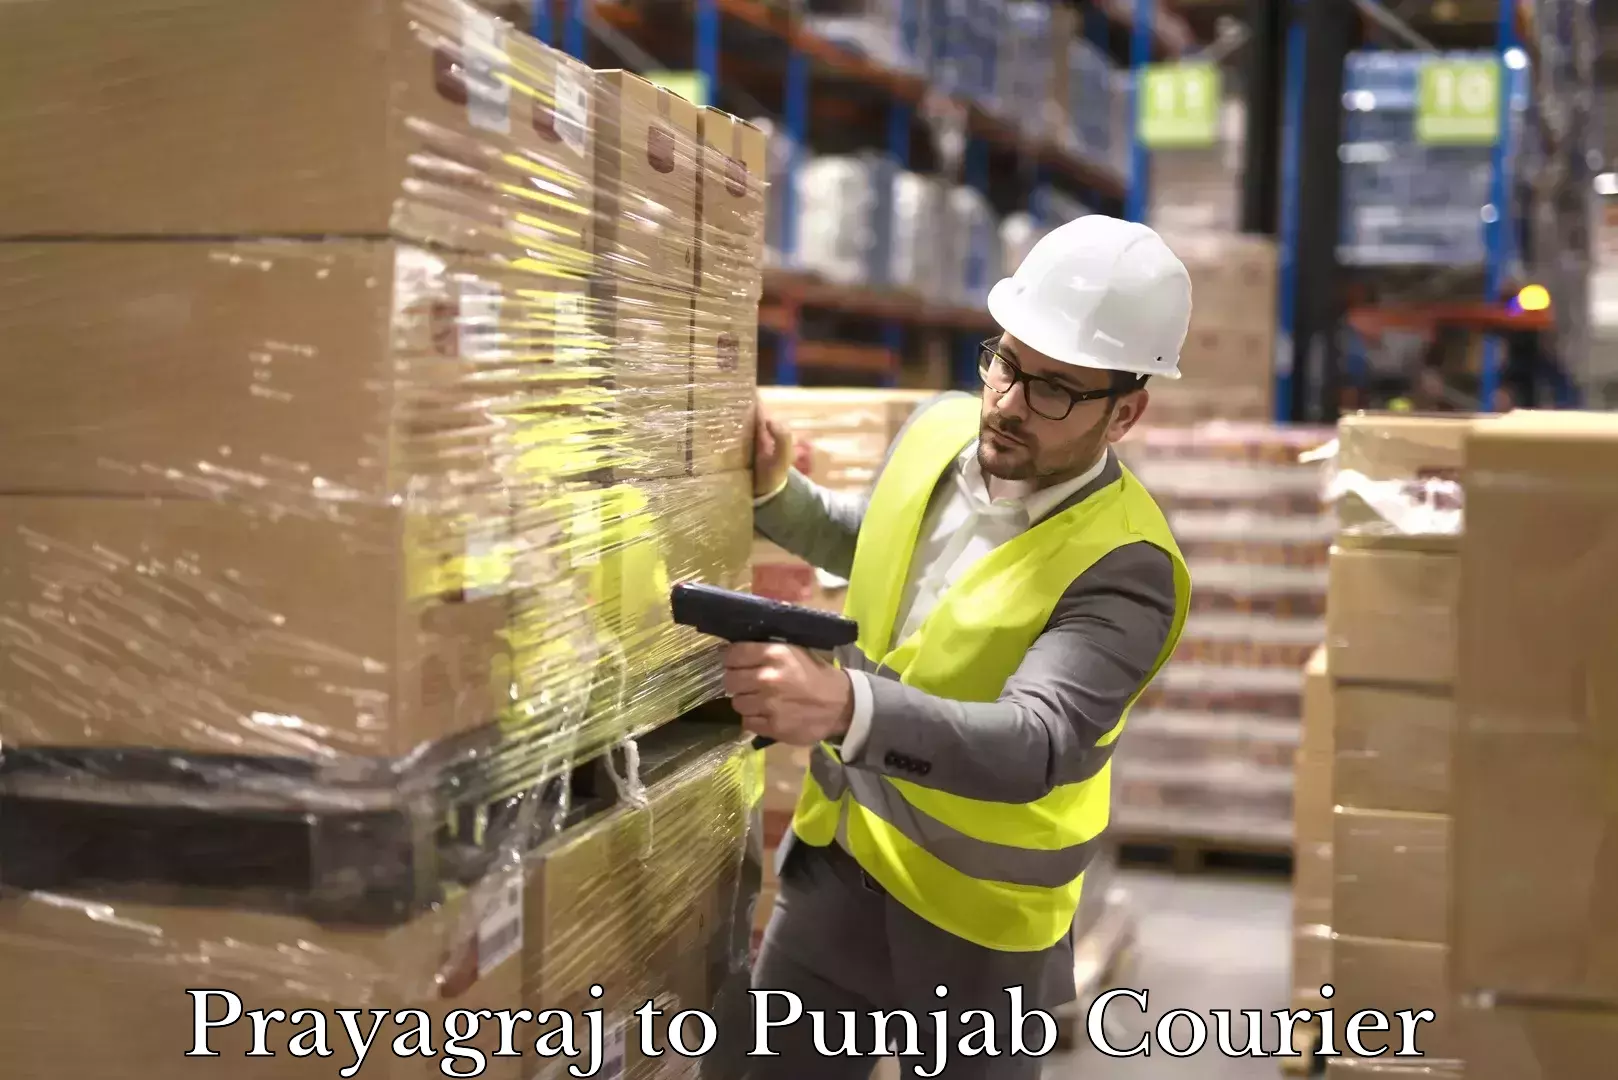 Efficient parcel tracking Prayagraj to Punjab